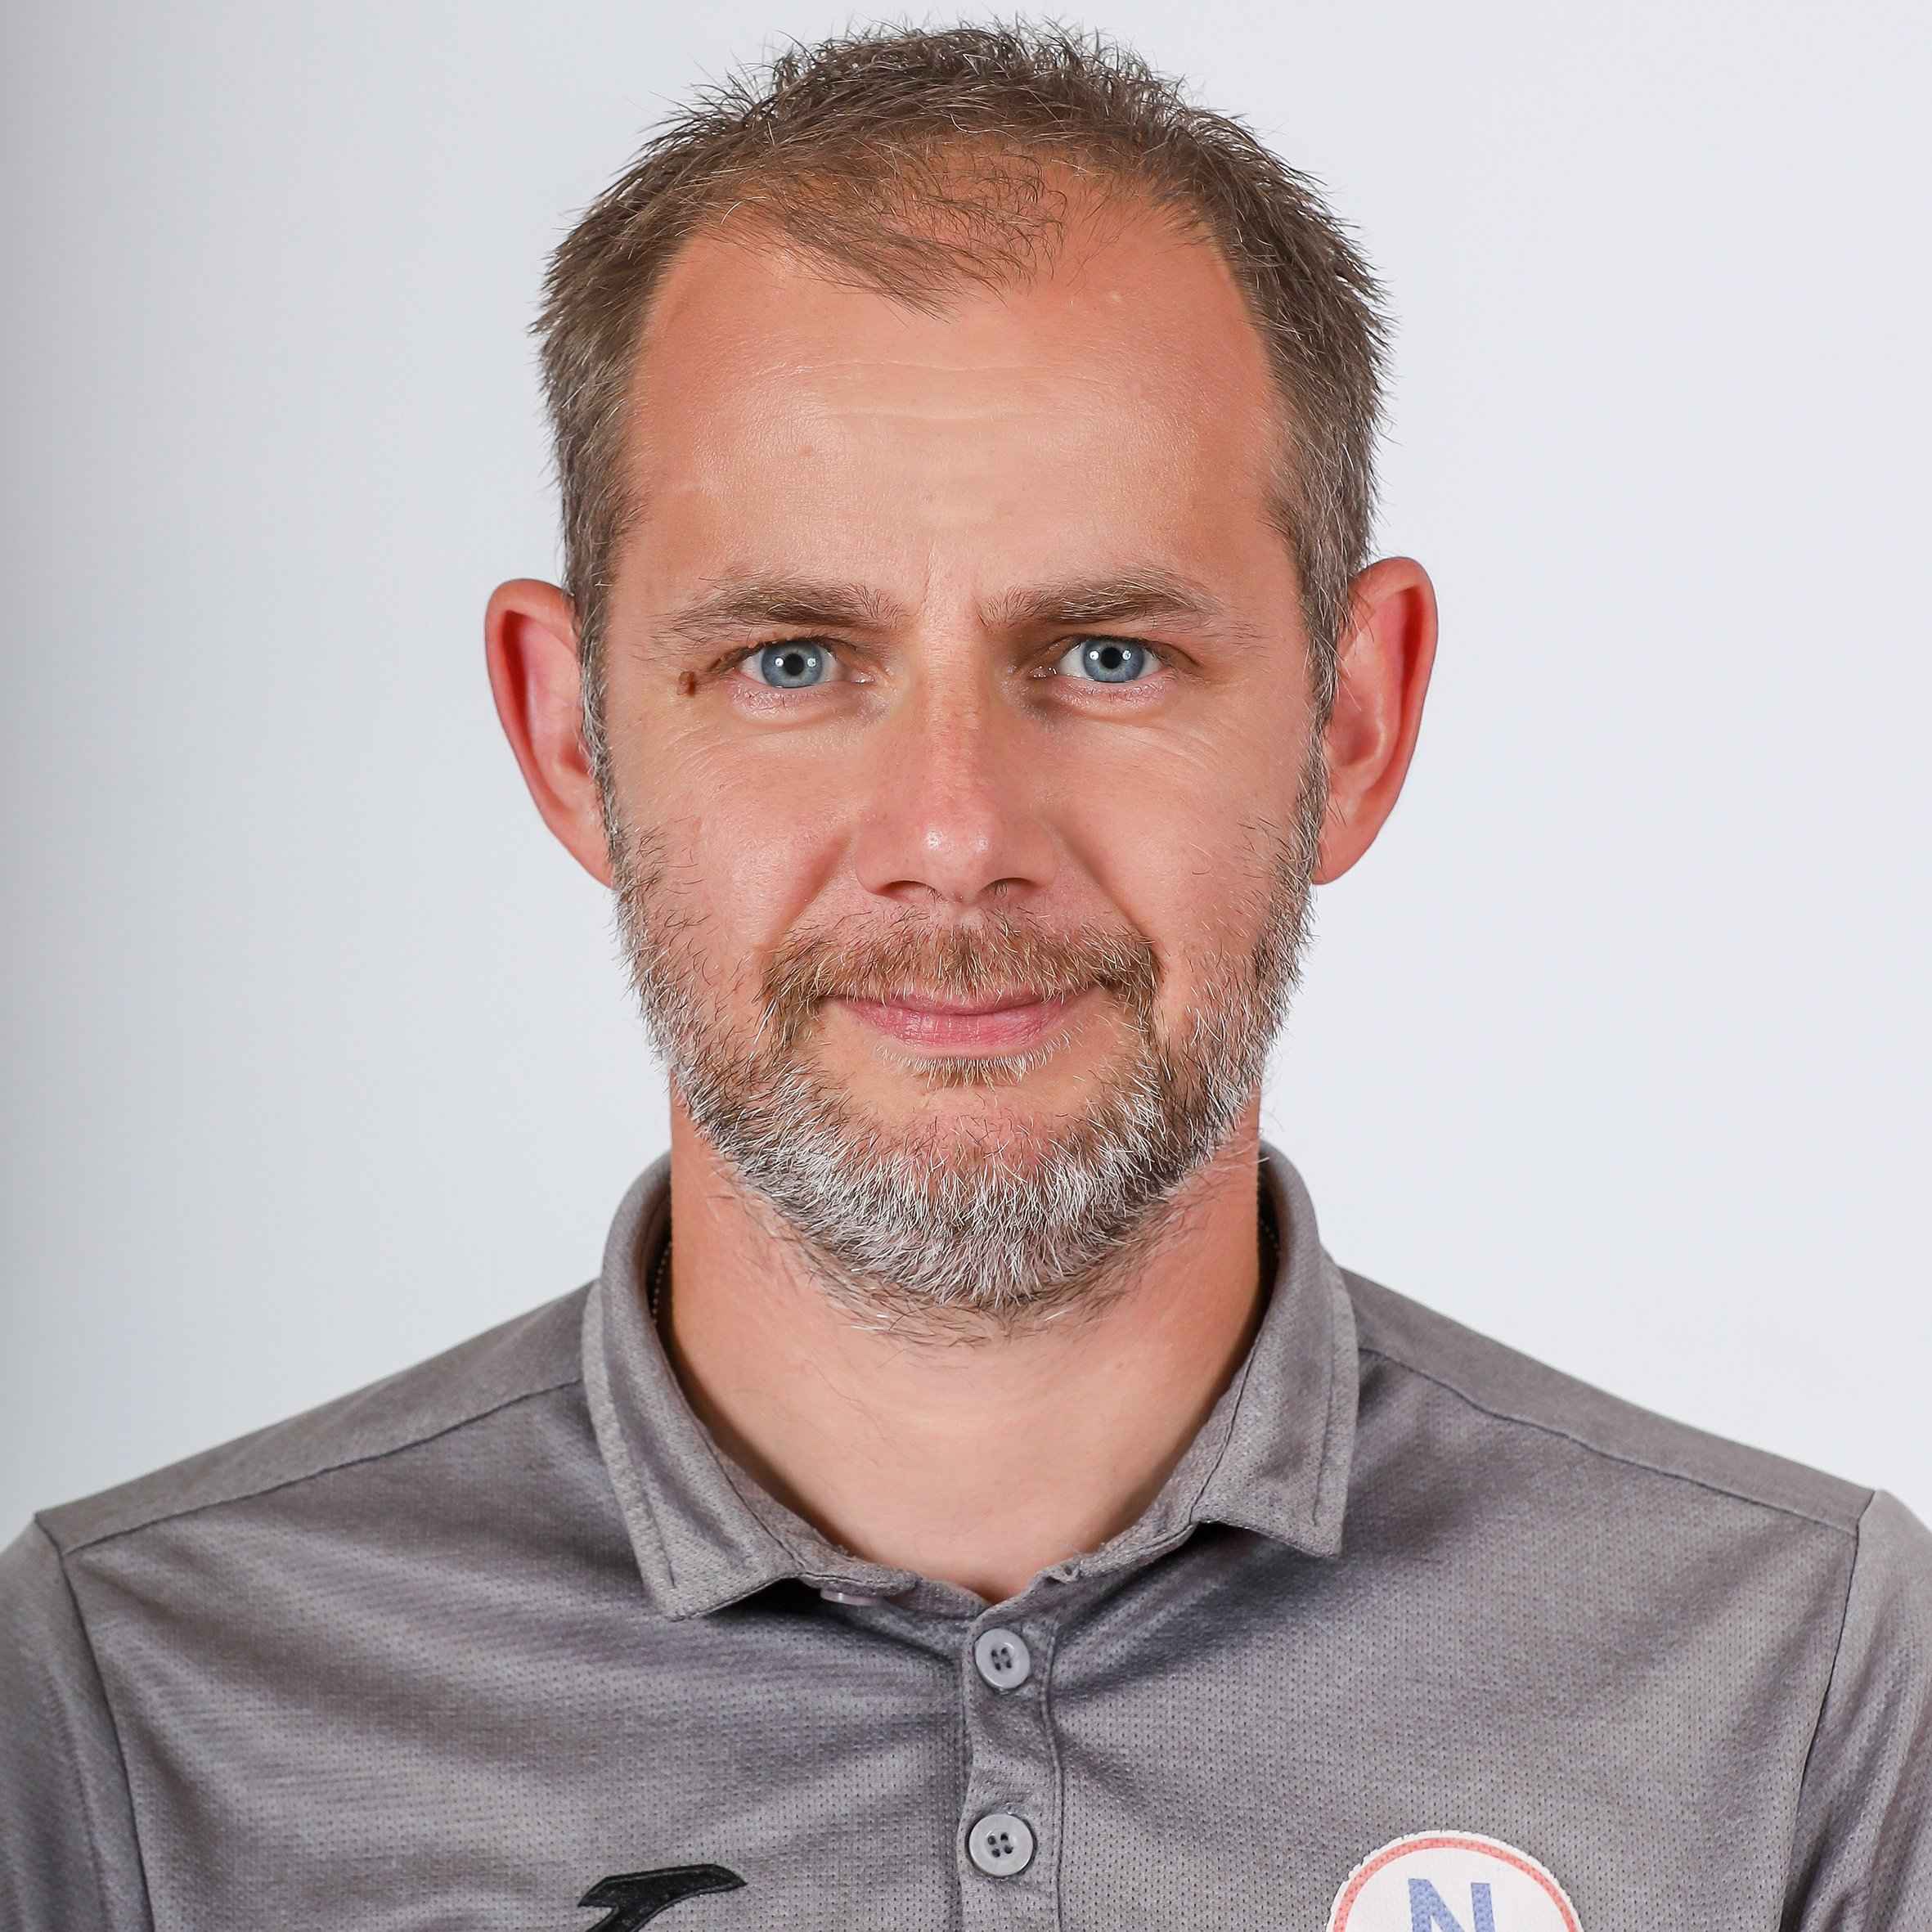 Przemysław Cichoń – profile photo